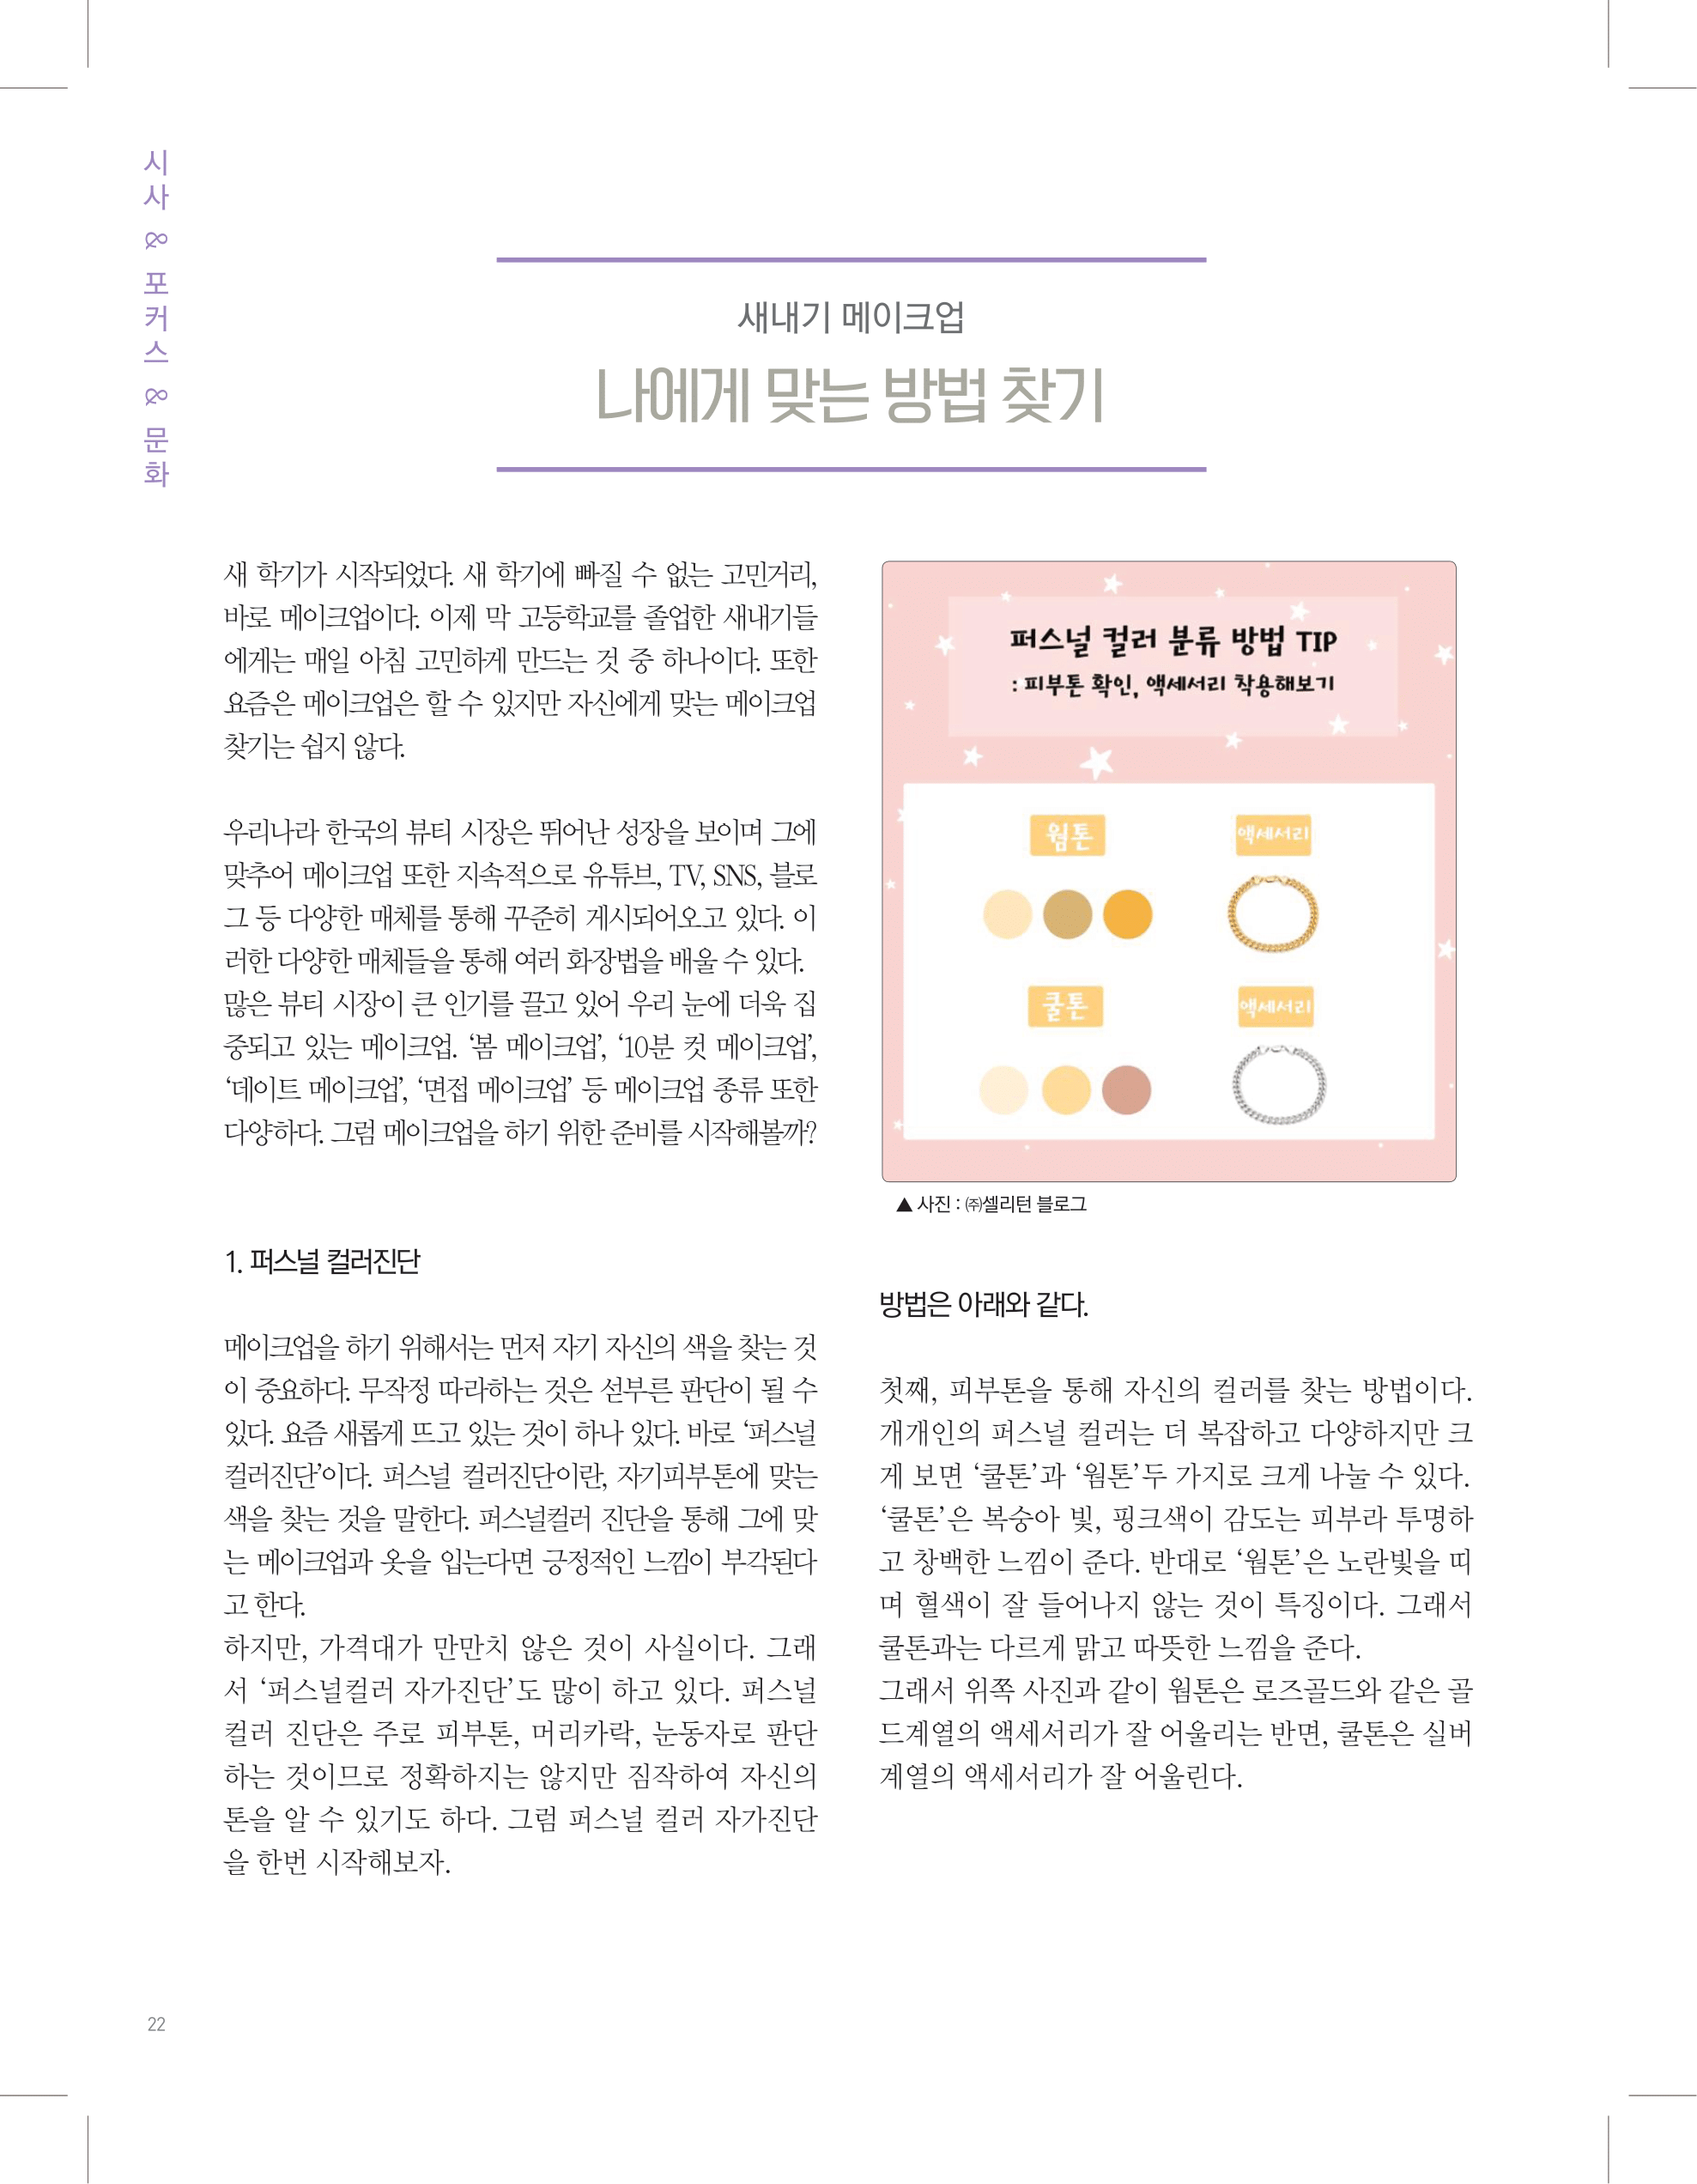 뜻새김 신문 73호 22